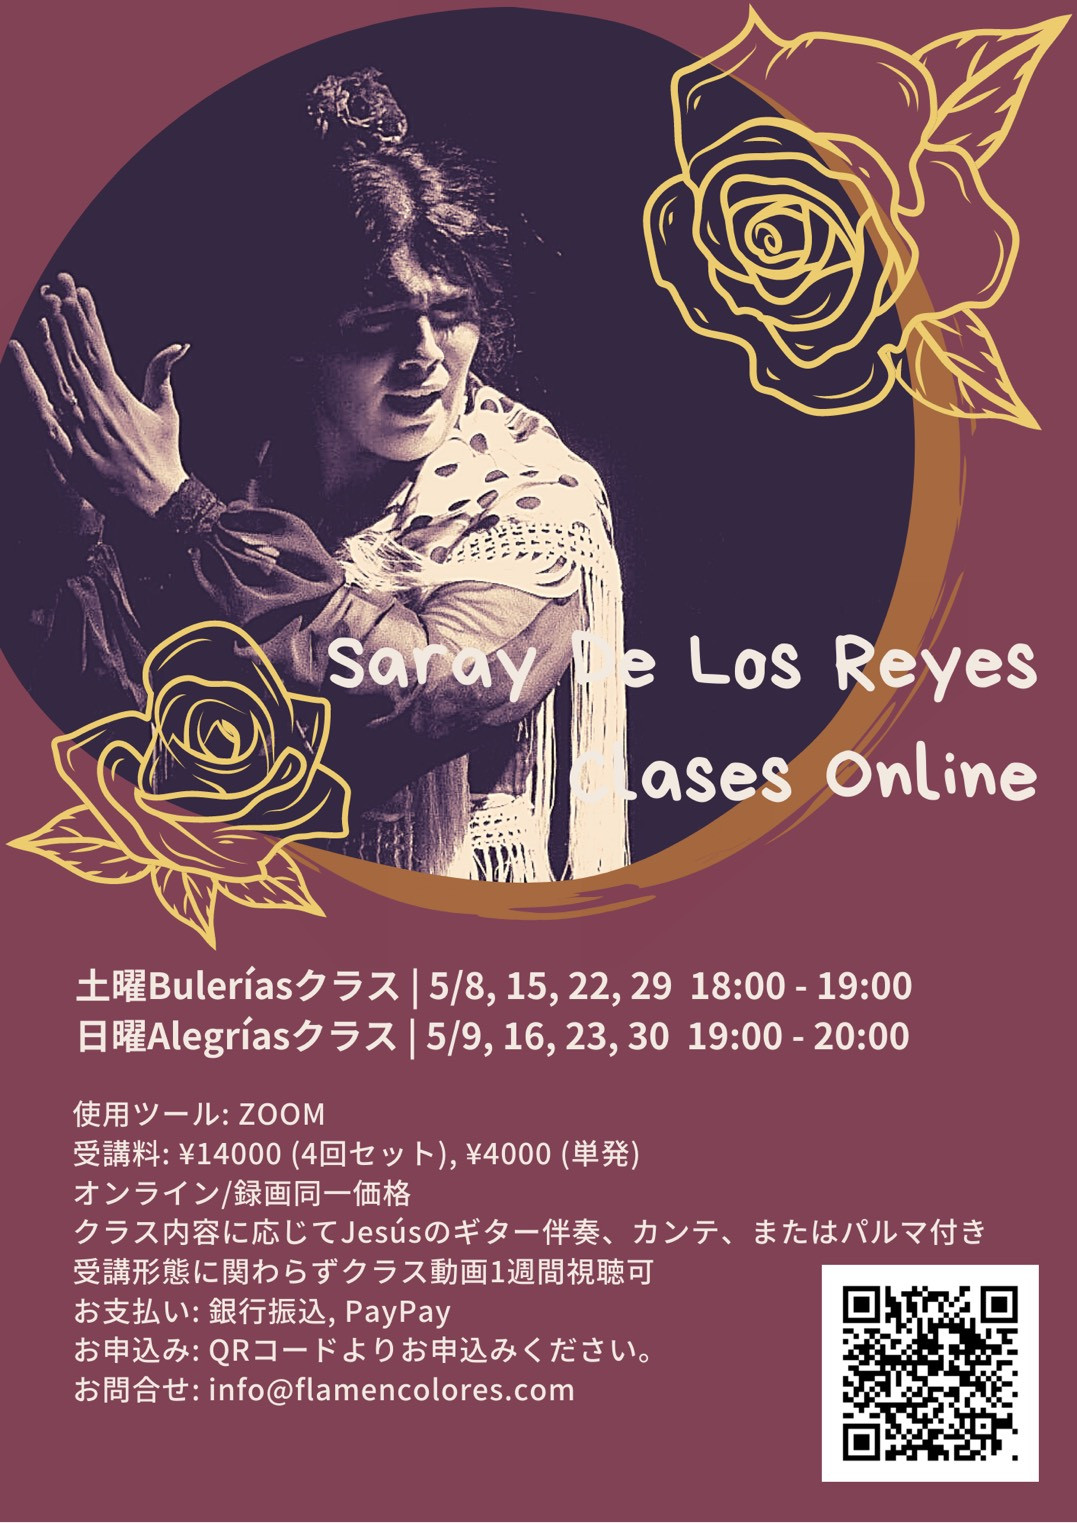 【ONLINE】Saray De Los Reyes オンラインクラス